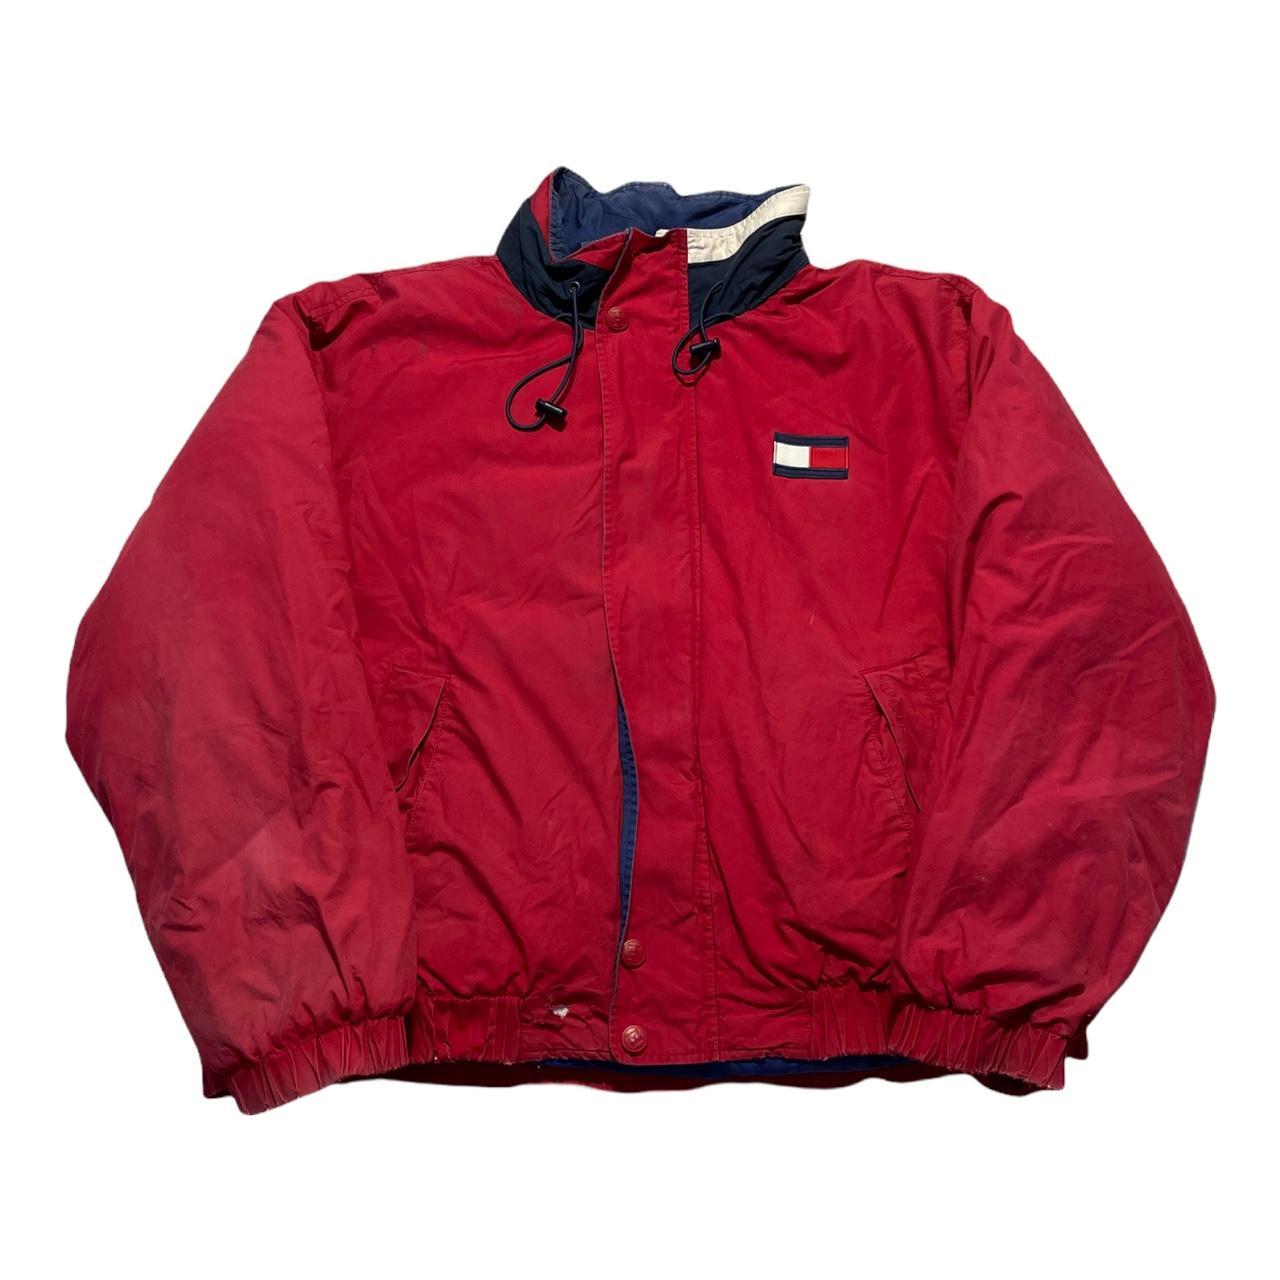 Vintage Red Tommy Hilfiger Zip-Up Puffer Jacket Size... - Depop